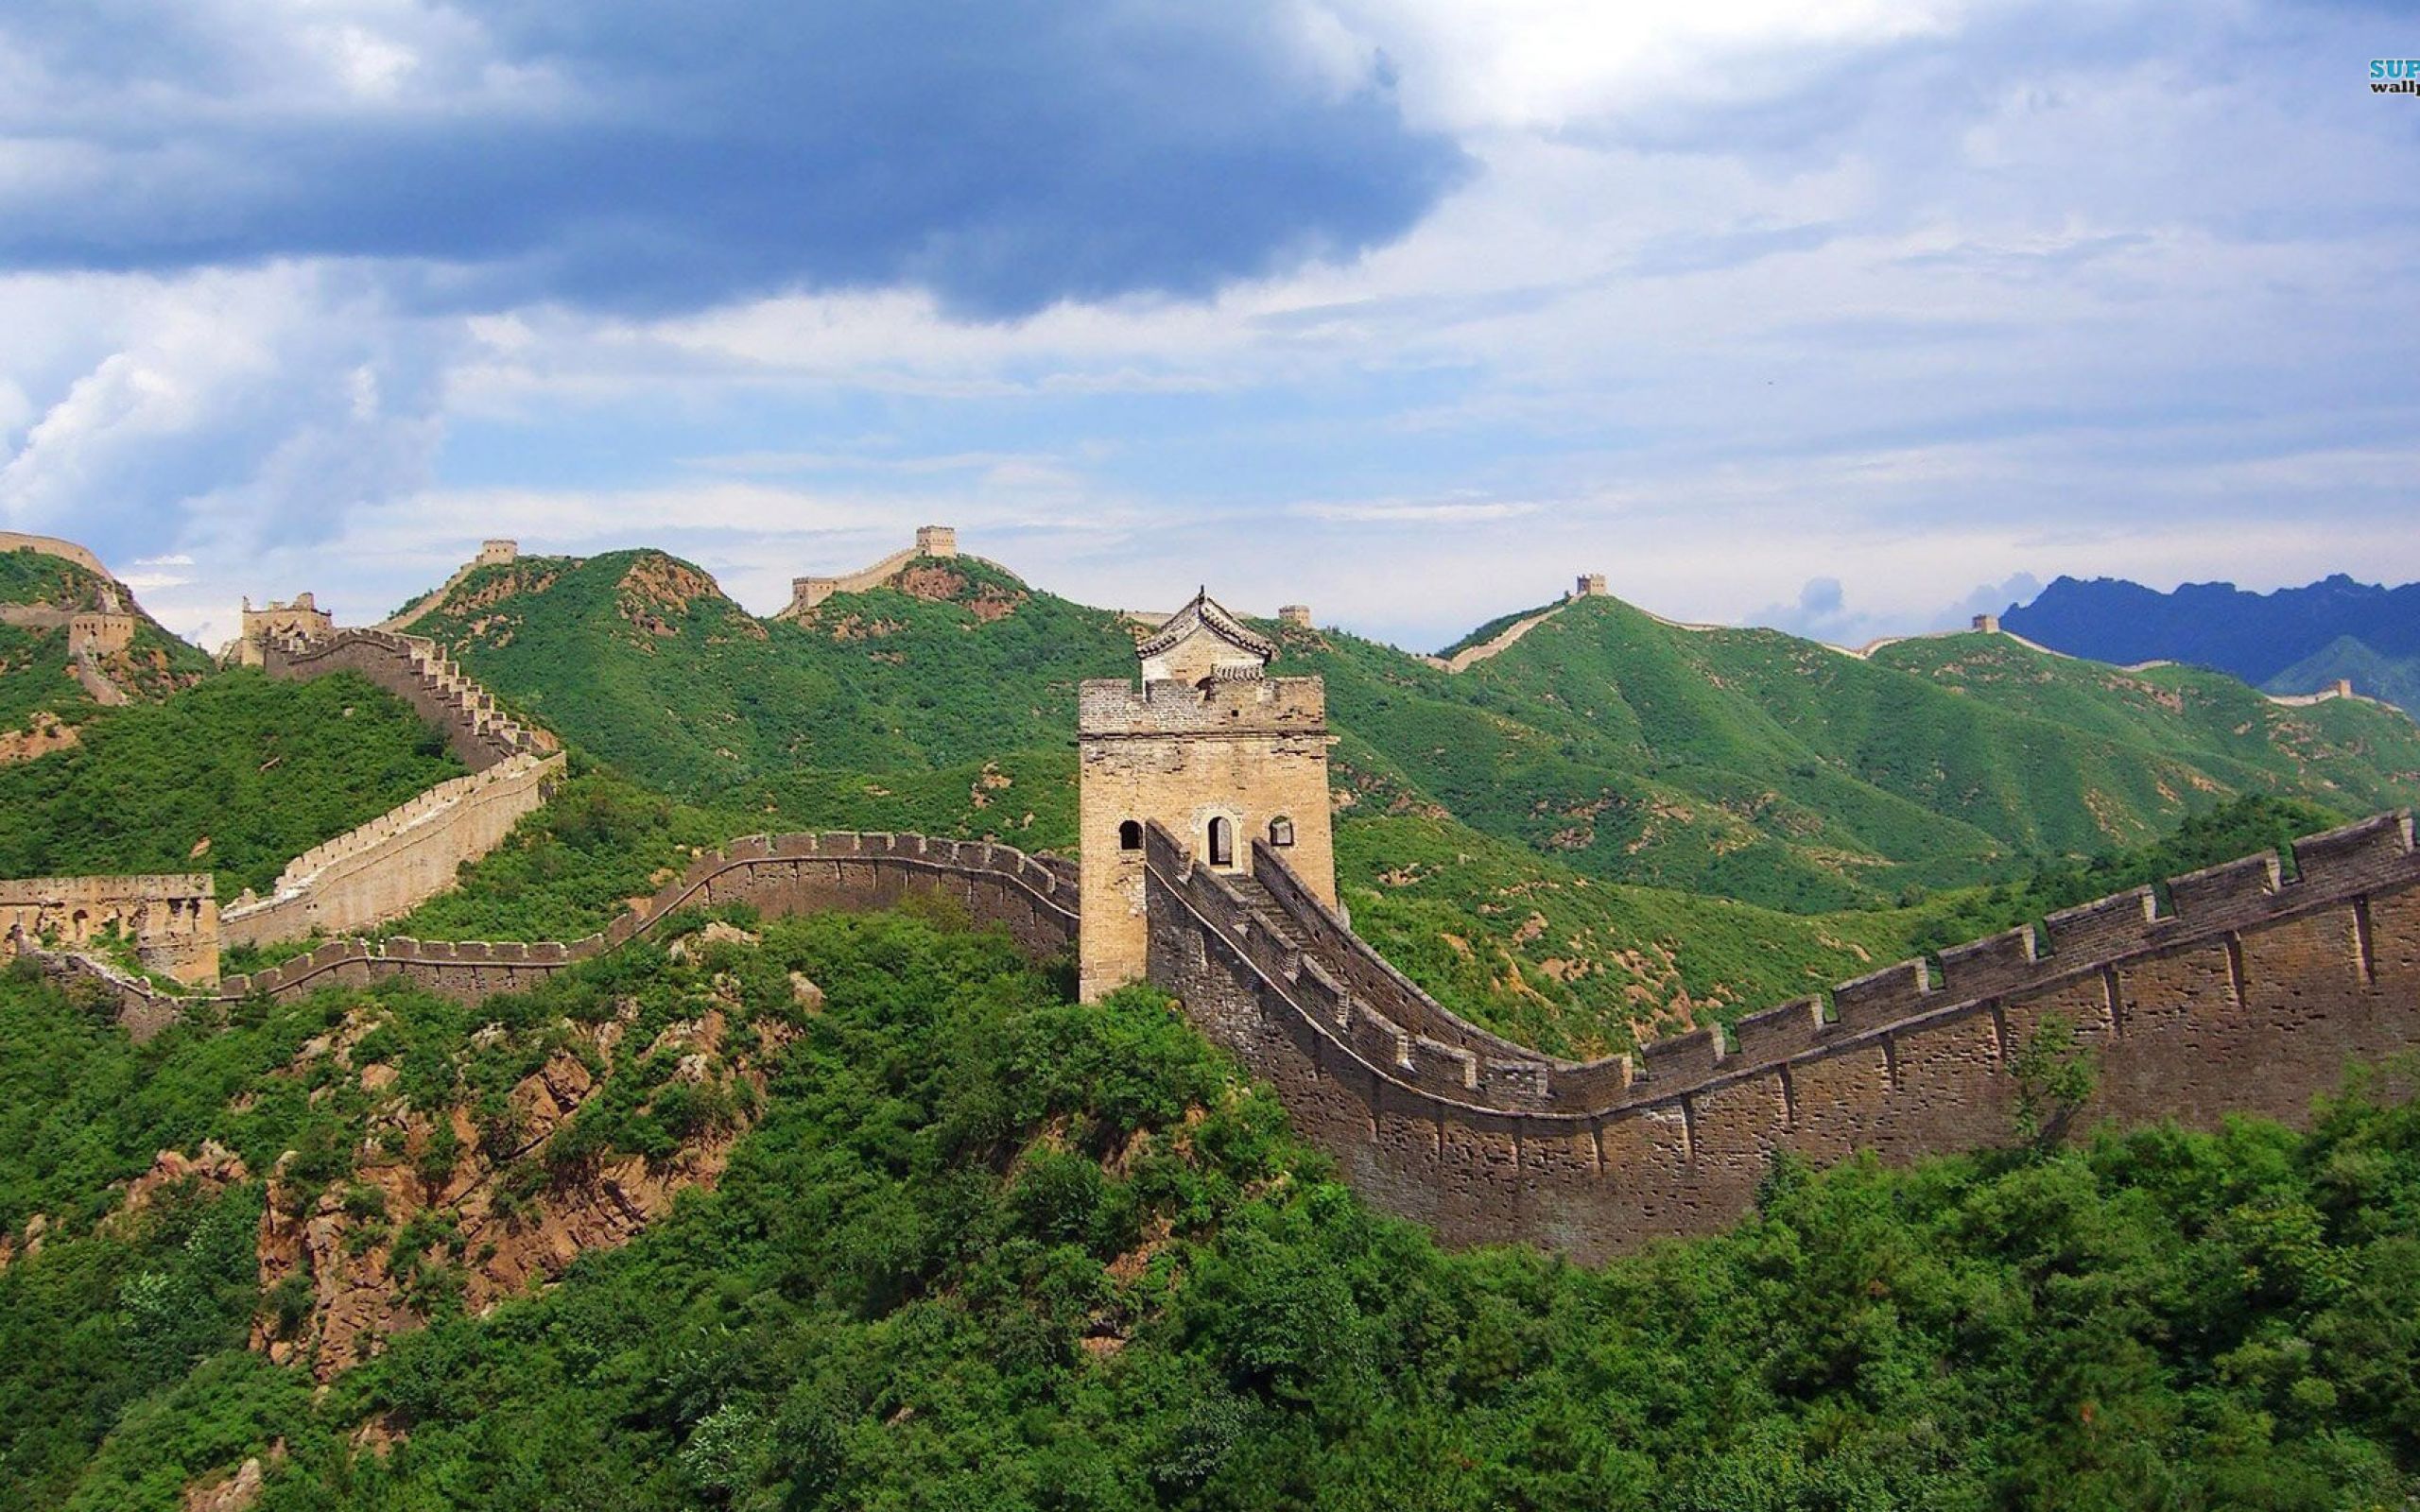 Великая стена википедия. Великая китайская стена. Бадалин Пекин. Пекин китайская стена. 2. Великая китайская стена, Китай.